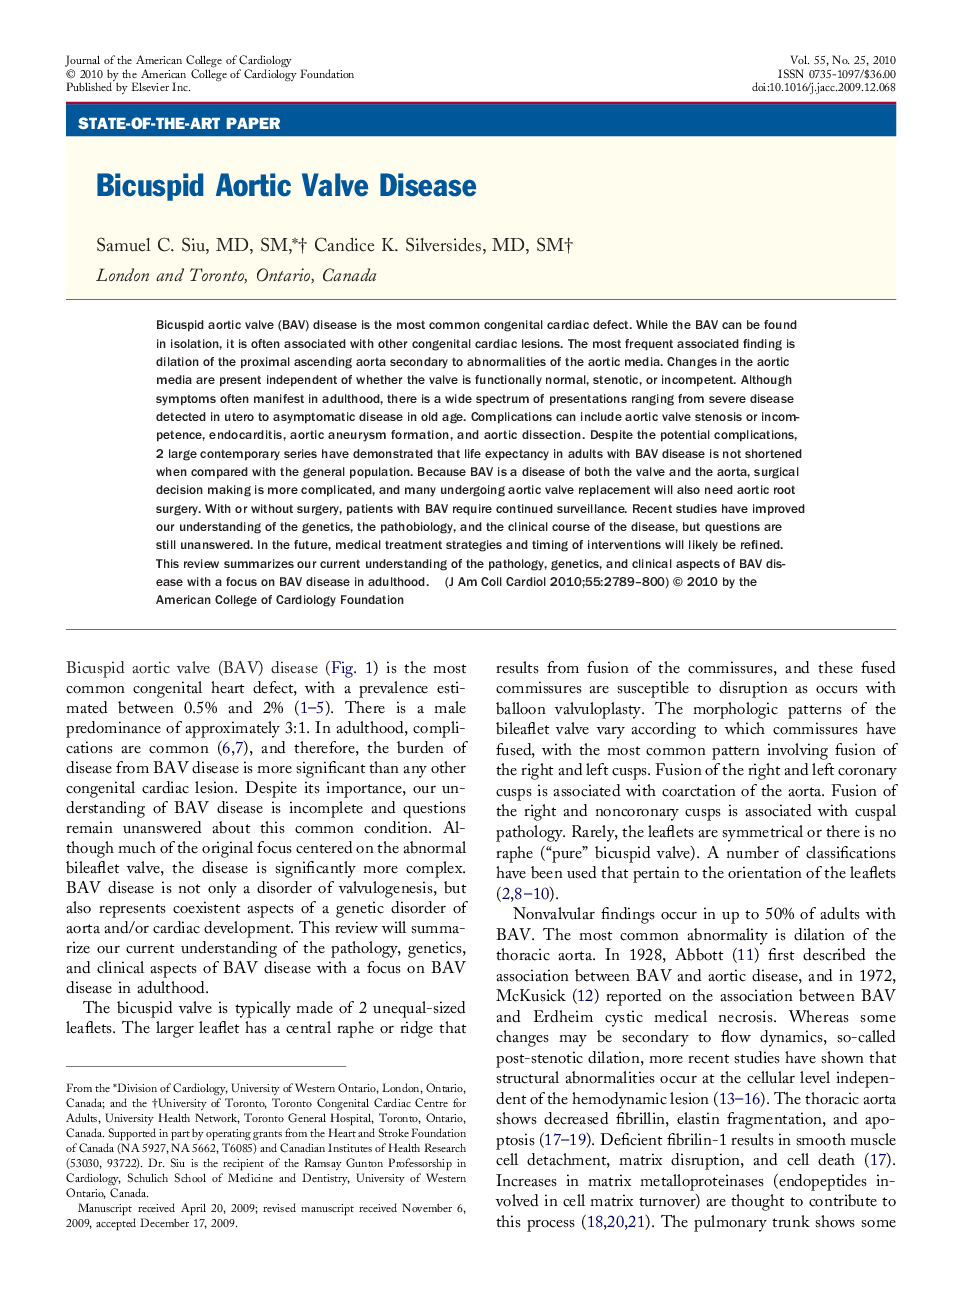 Bicuspid Aortic Valve Disease 